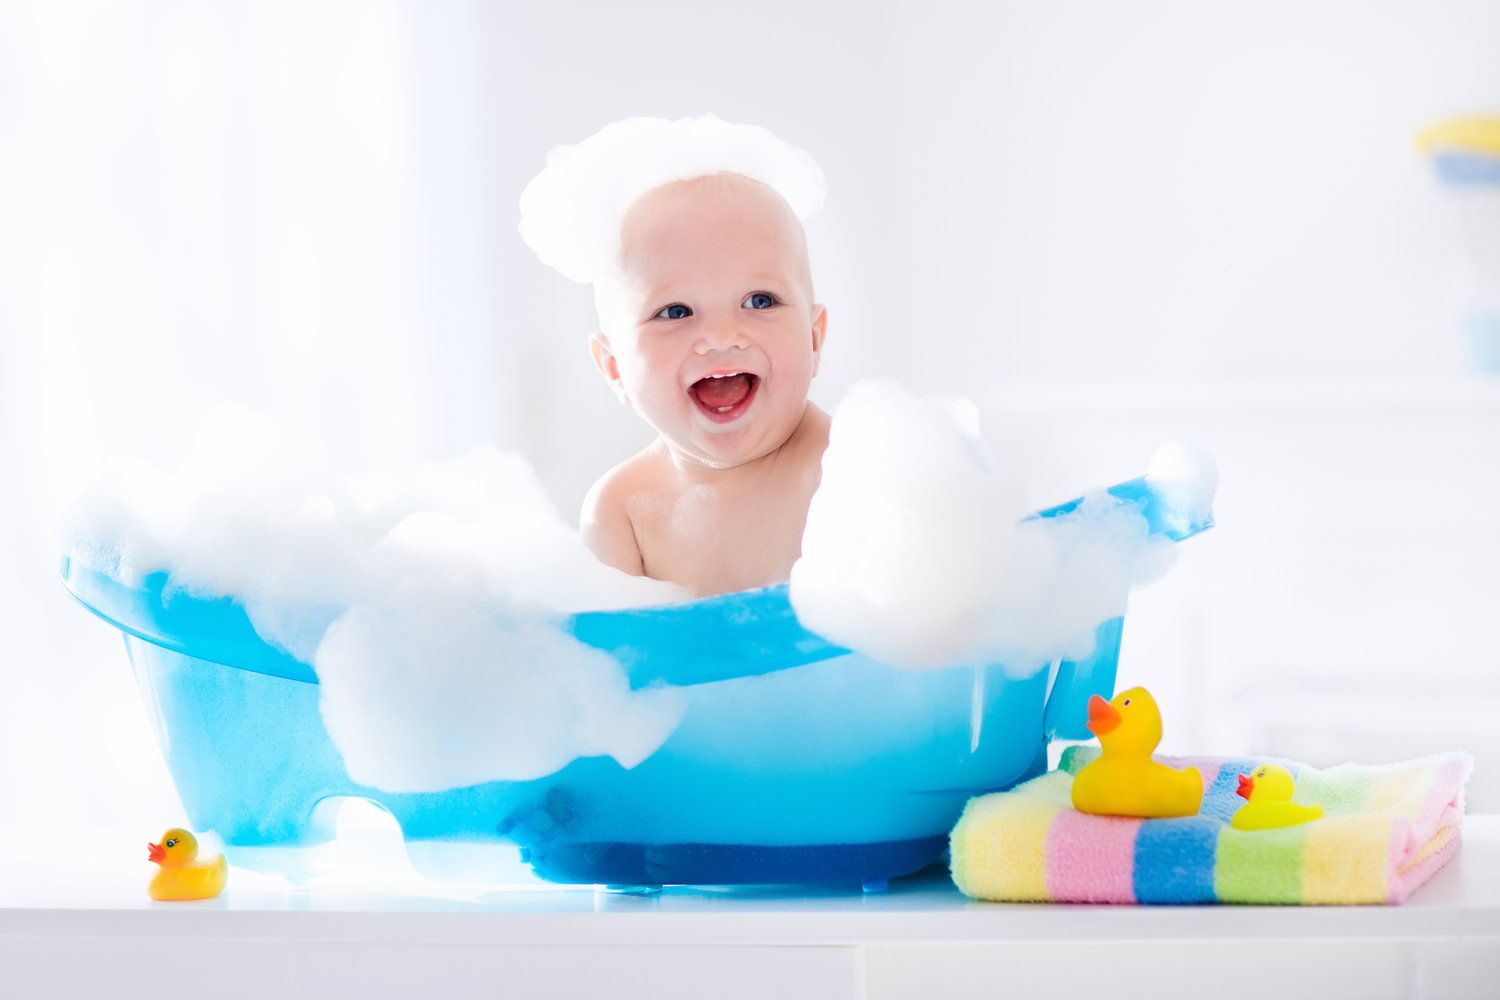 Tina de baño para bebé: el mejor regalo de Baby Shower【Comparativa】